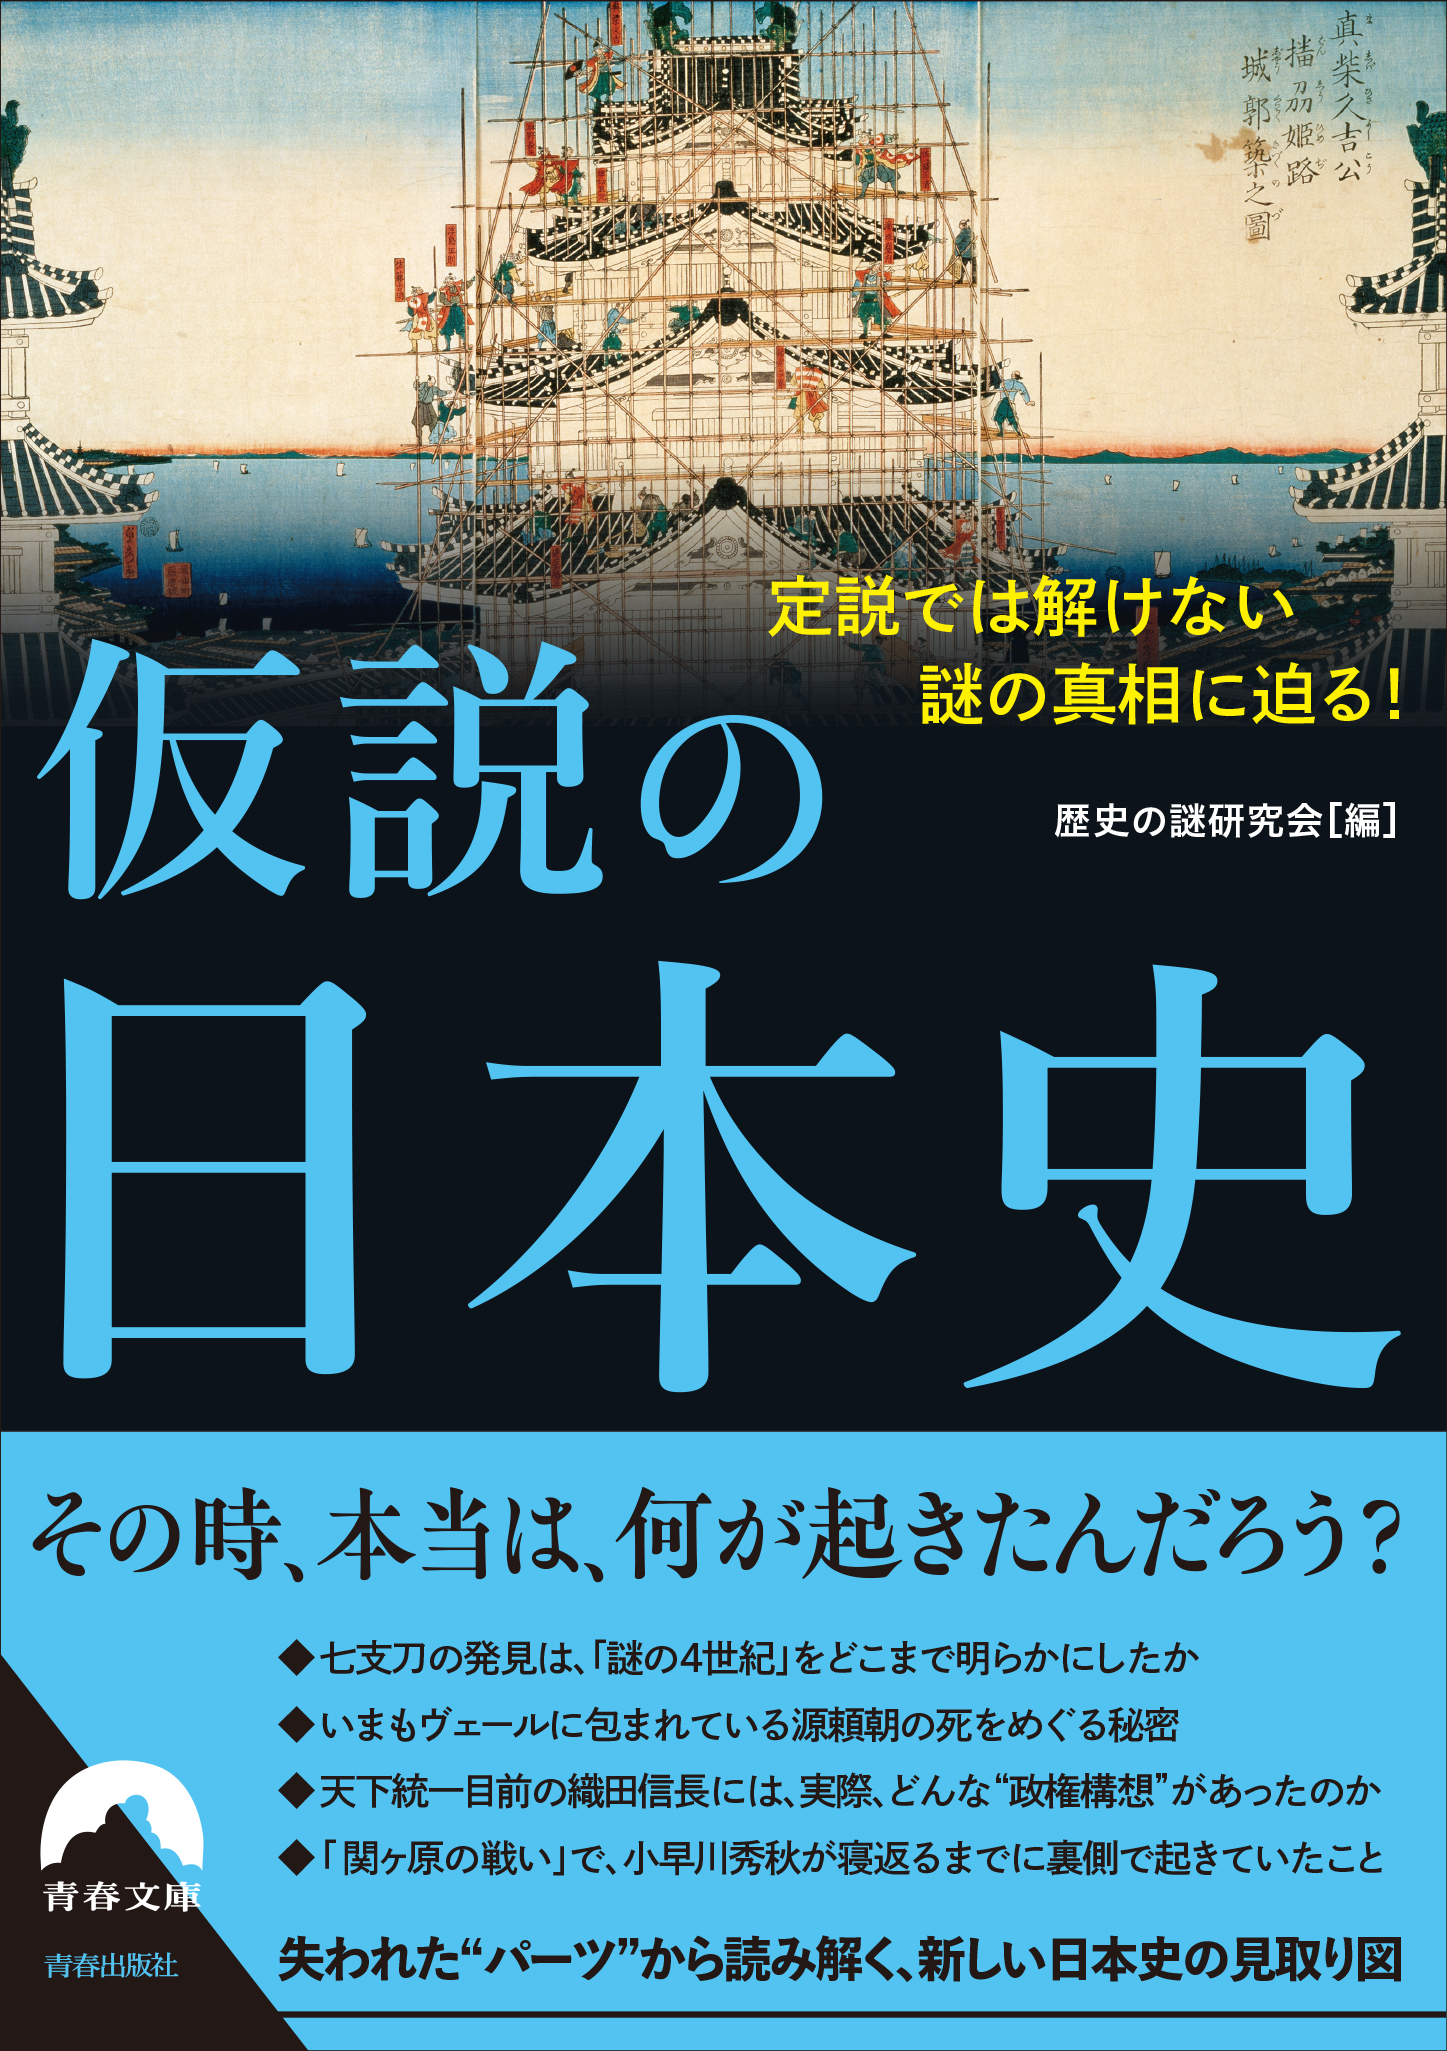 そのとき 本当は 何が起きたんだろう 定説では解けない歴史の謎に迫る一冊 仮説の日本史 発売 株式会社 青春出版社のプレスリリース